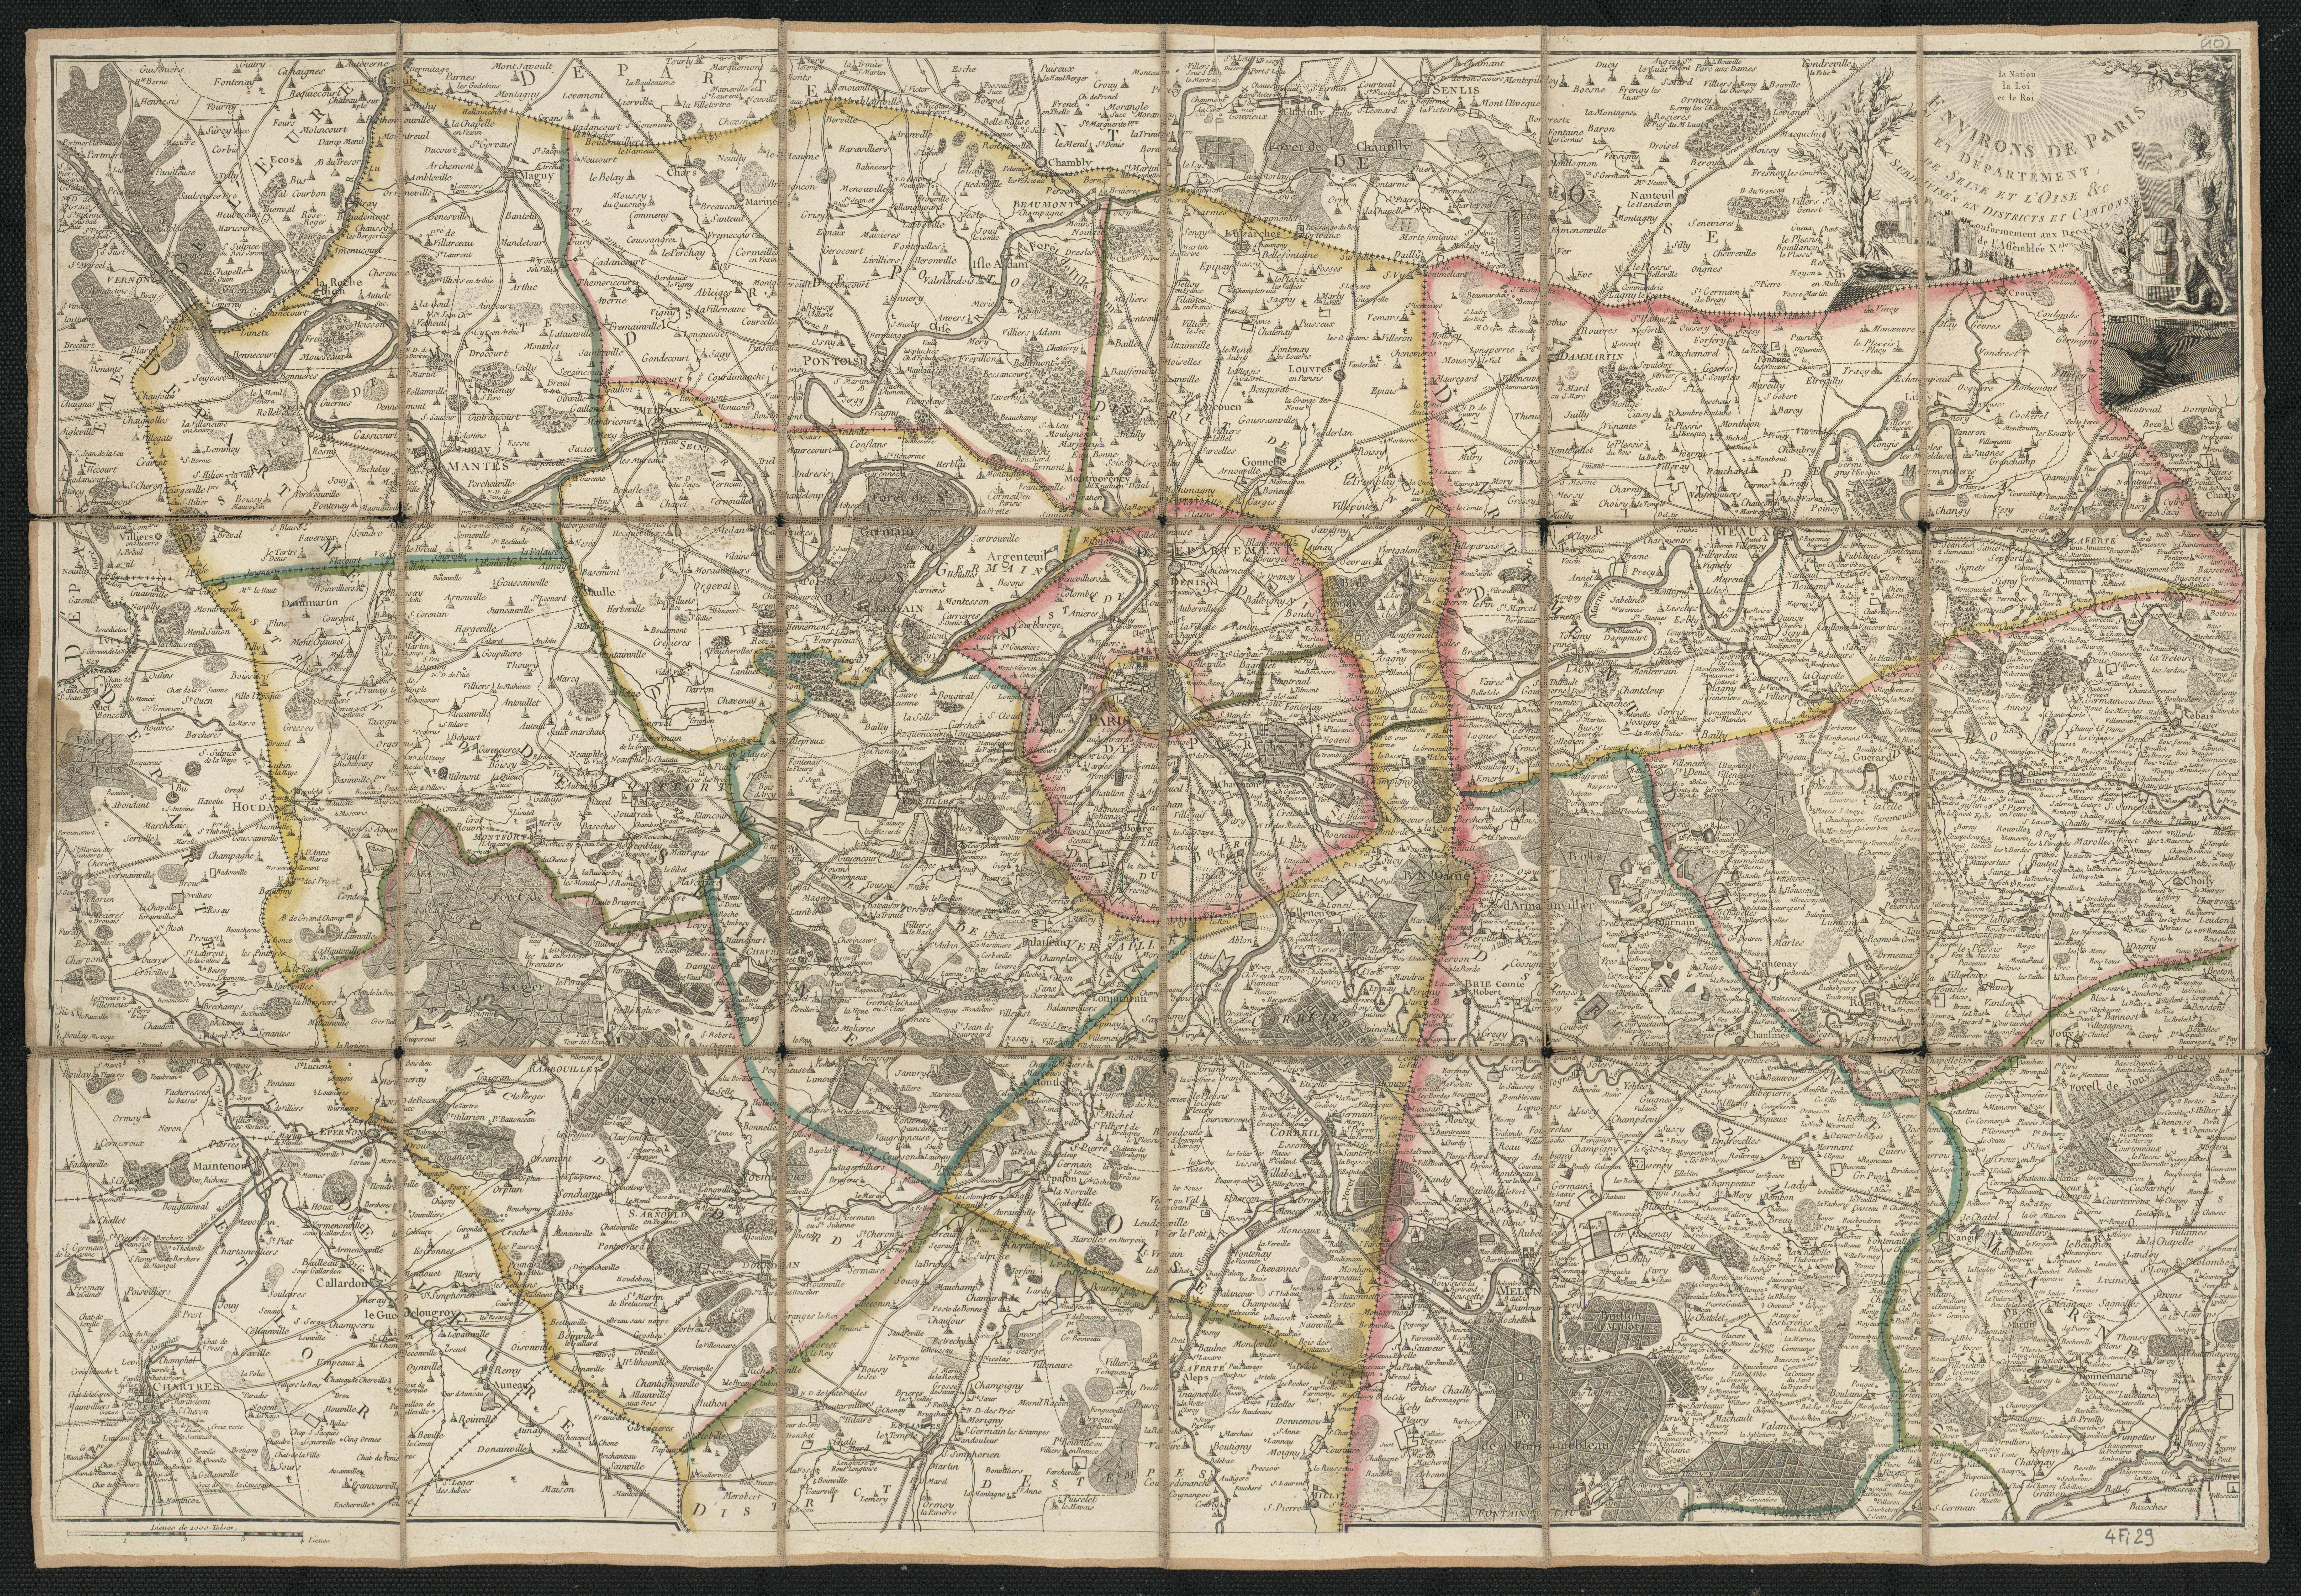 Environs de Paris et Département de Seine et l'Oise etc. subdivisés en Districts et Cantons conformément aux Decrets de l'Assemblée Nationale. [Ca 1791].